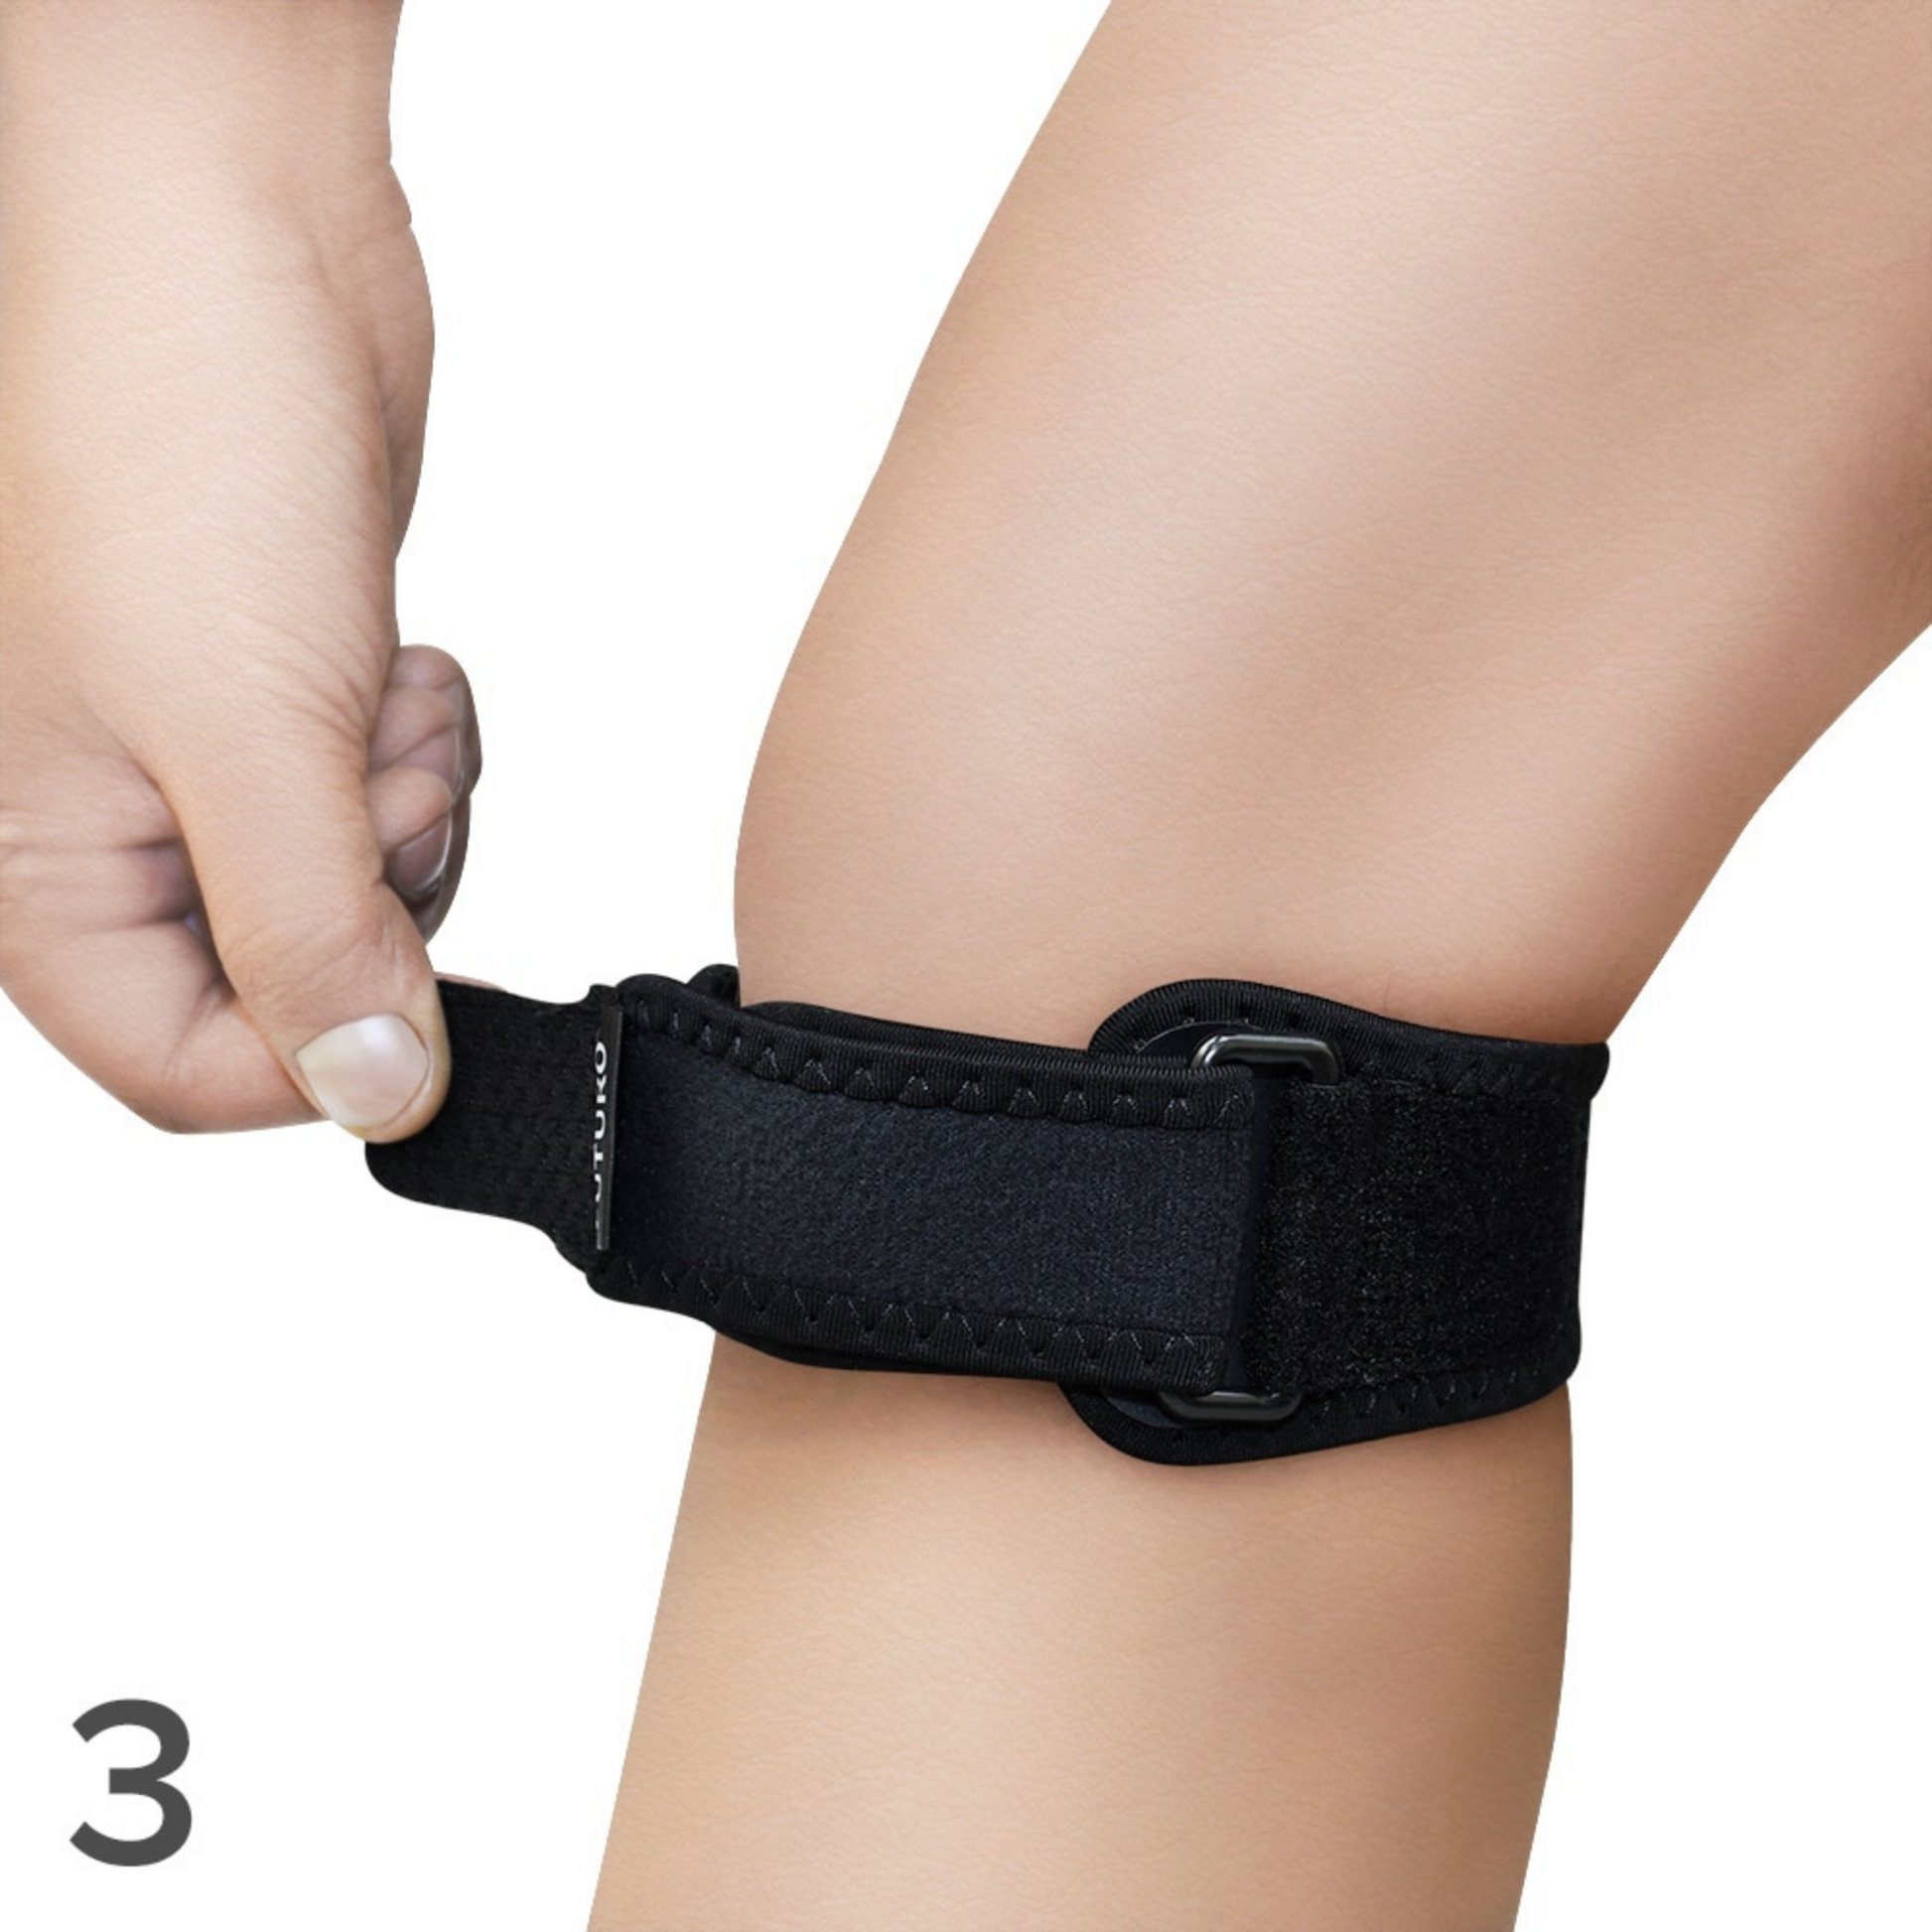 FUTURO™ Knee Strap, 09189EN, Adjustable